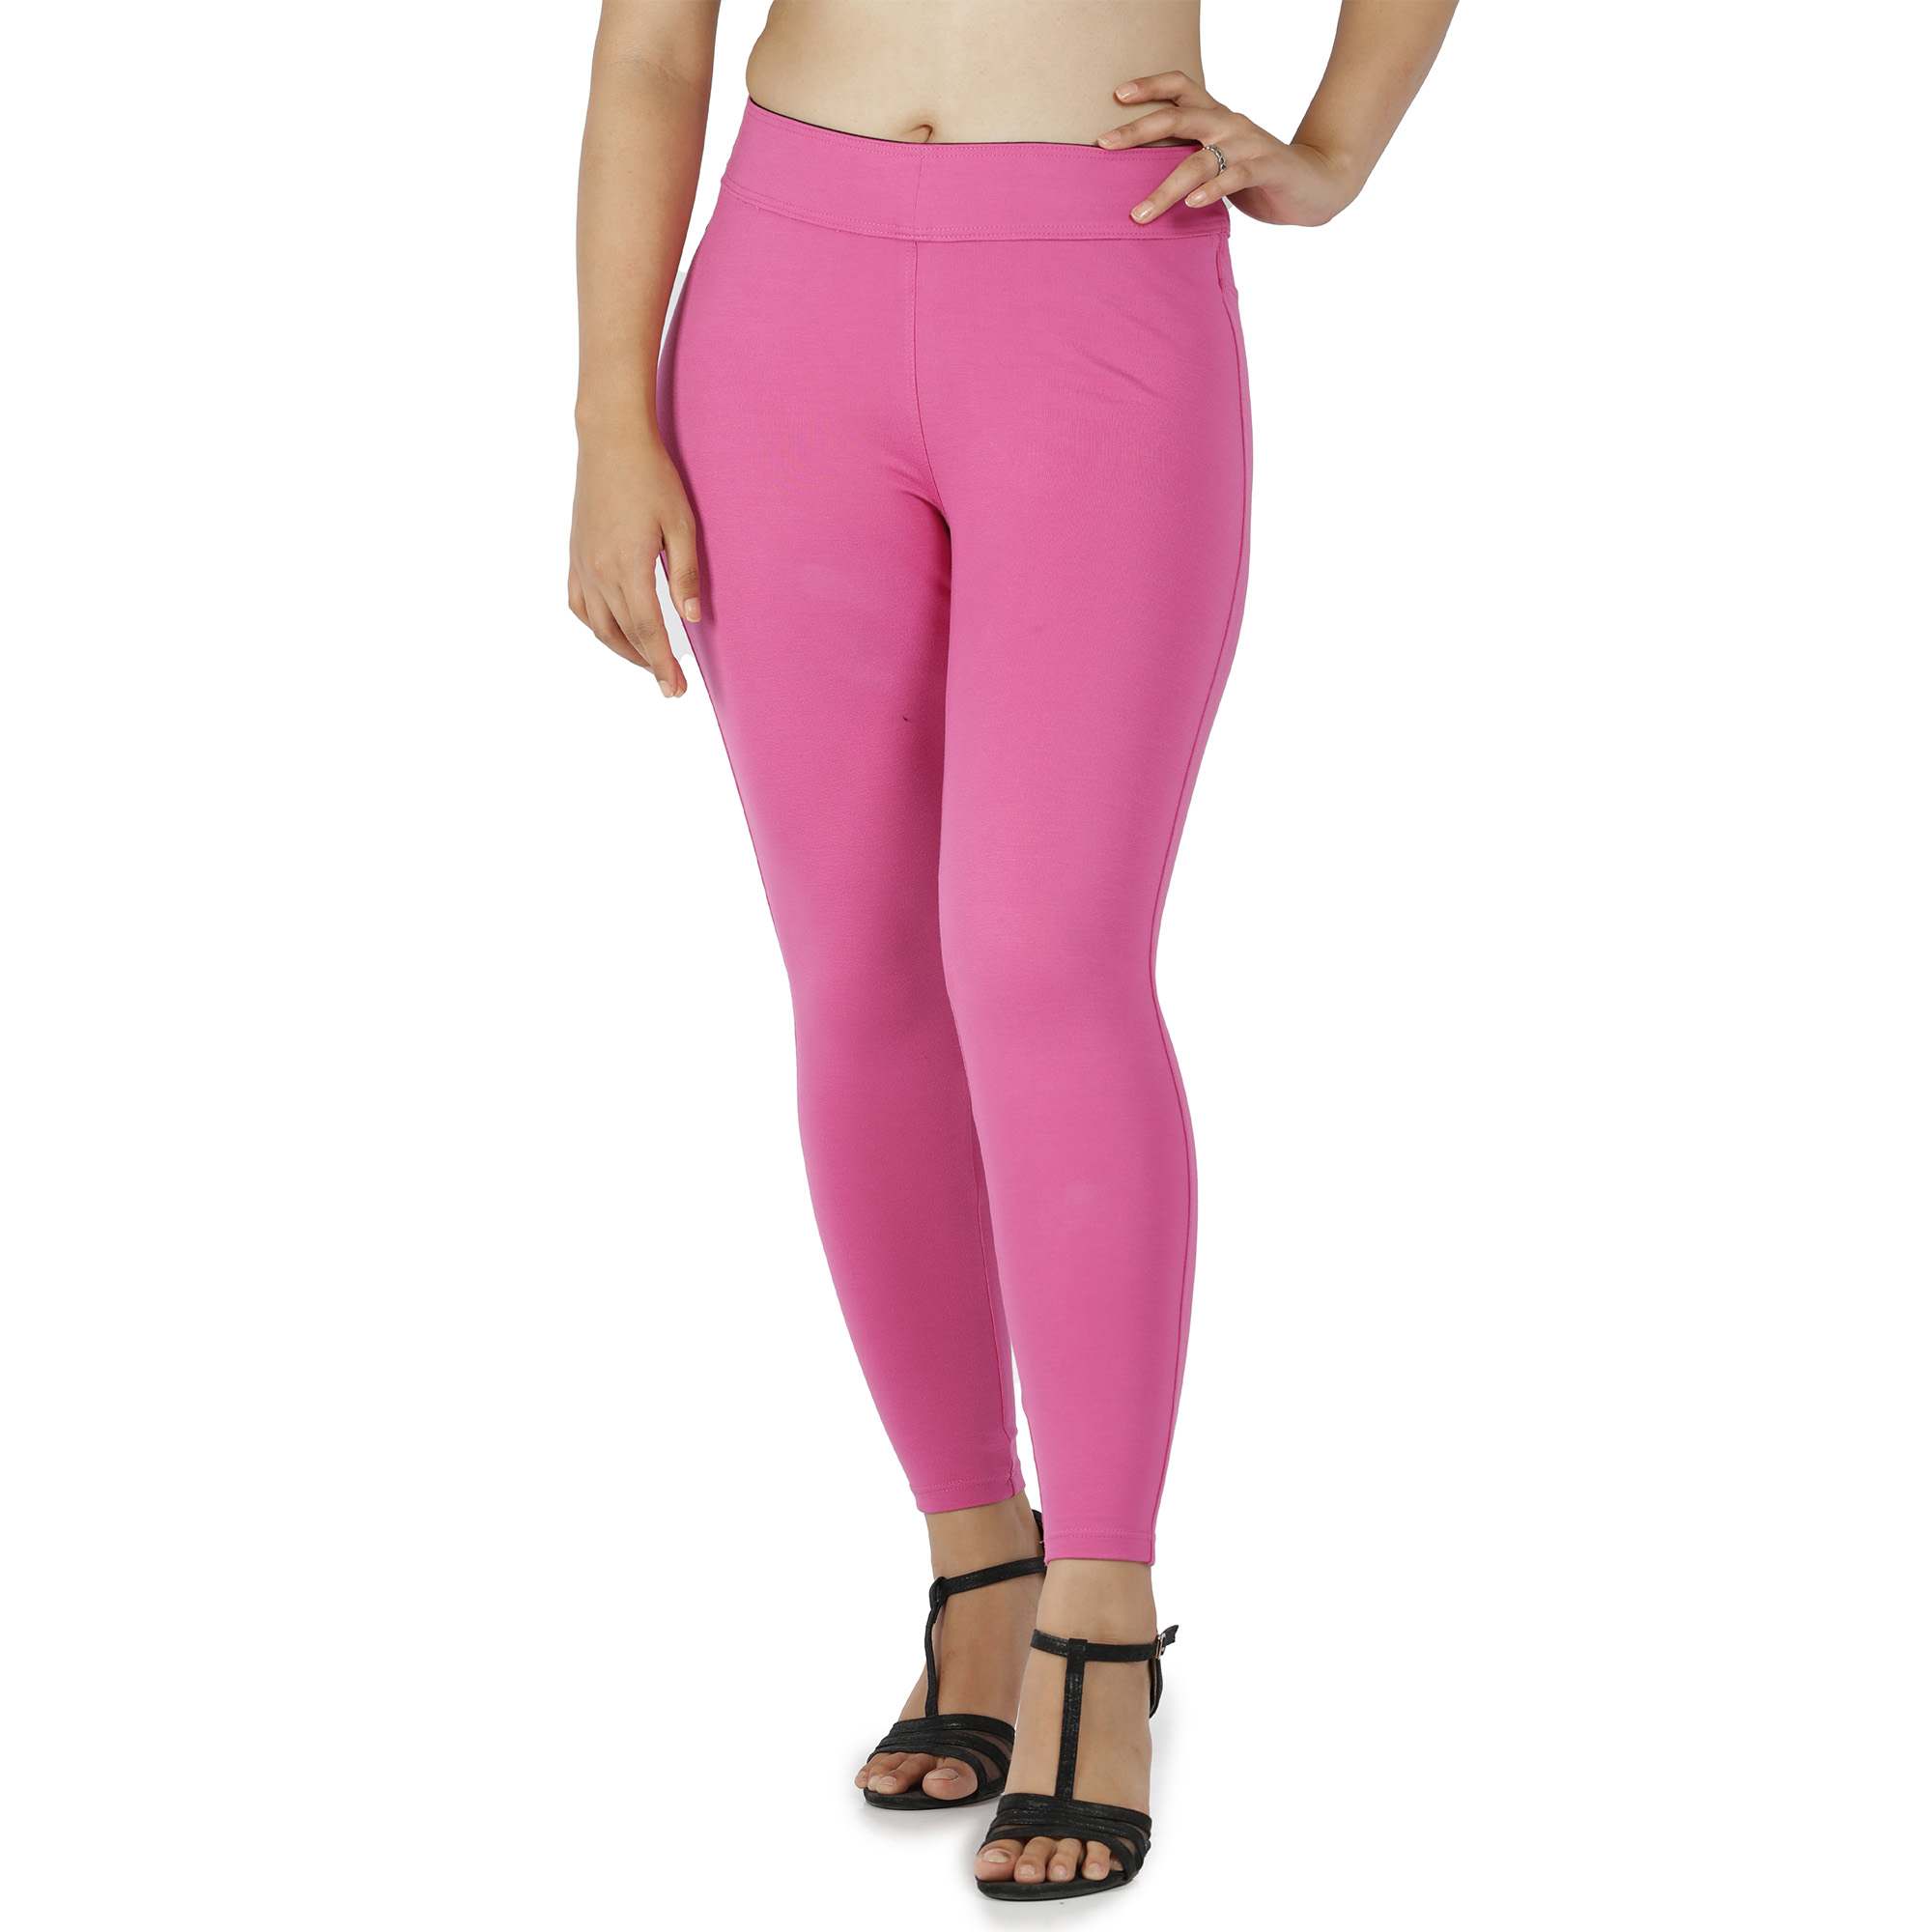 Pink jeggings for women Compression pant 2 back pockets - Belore Slims